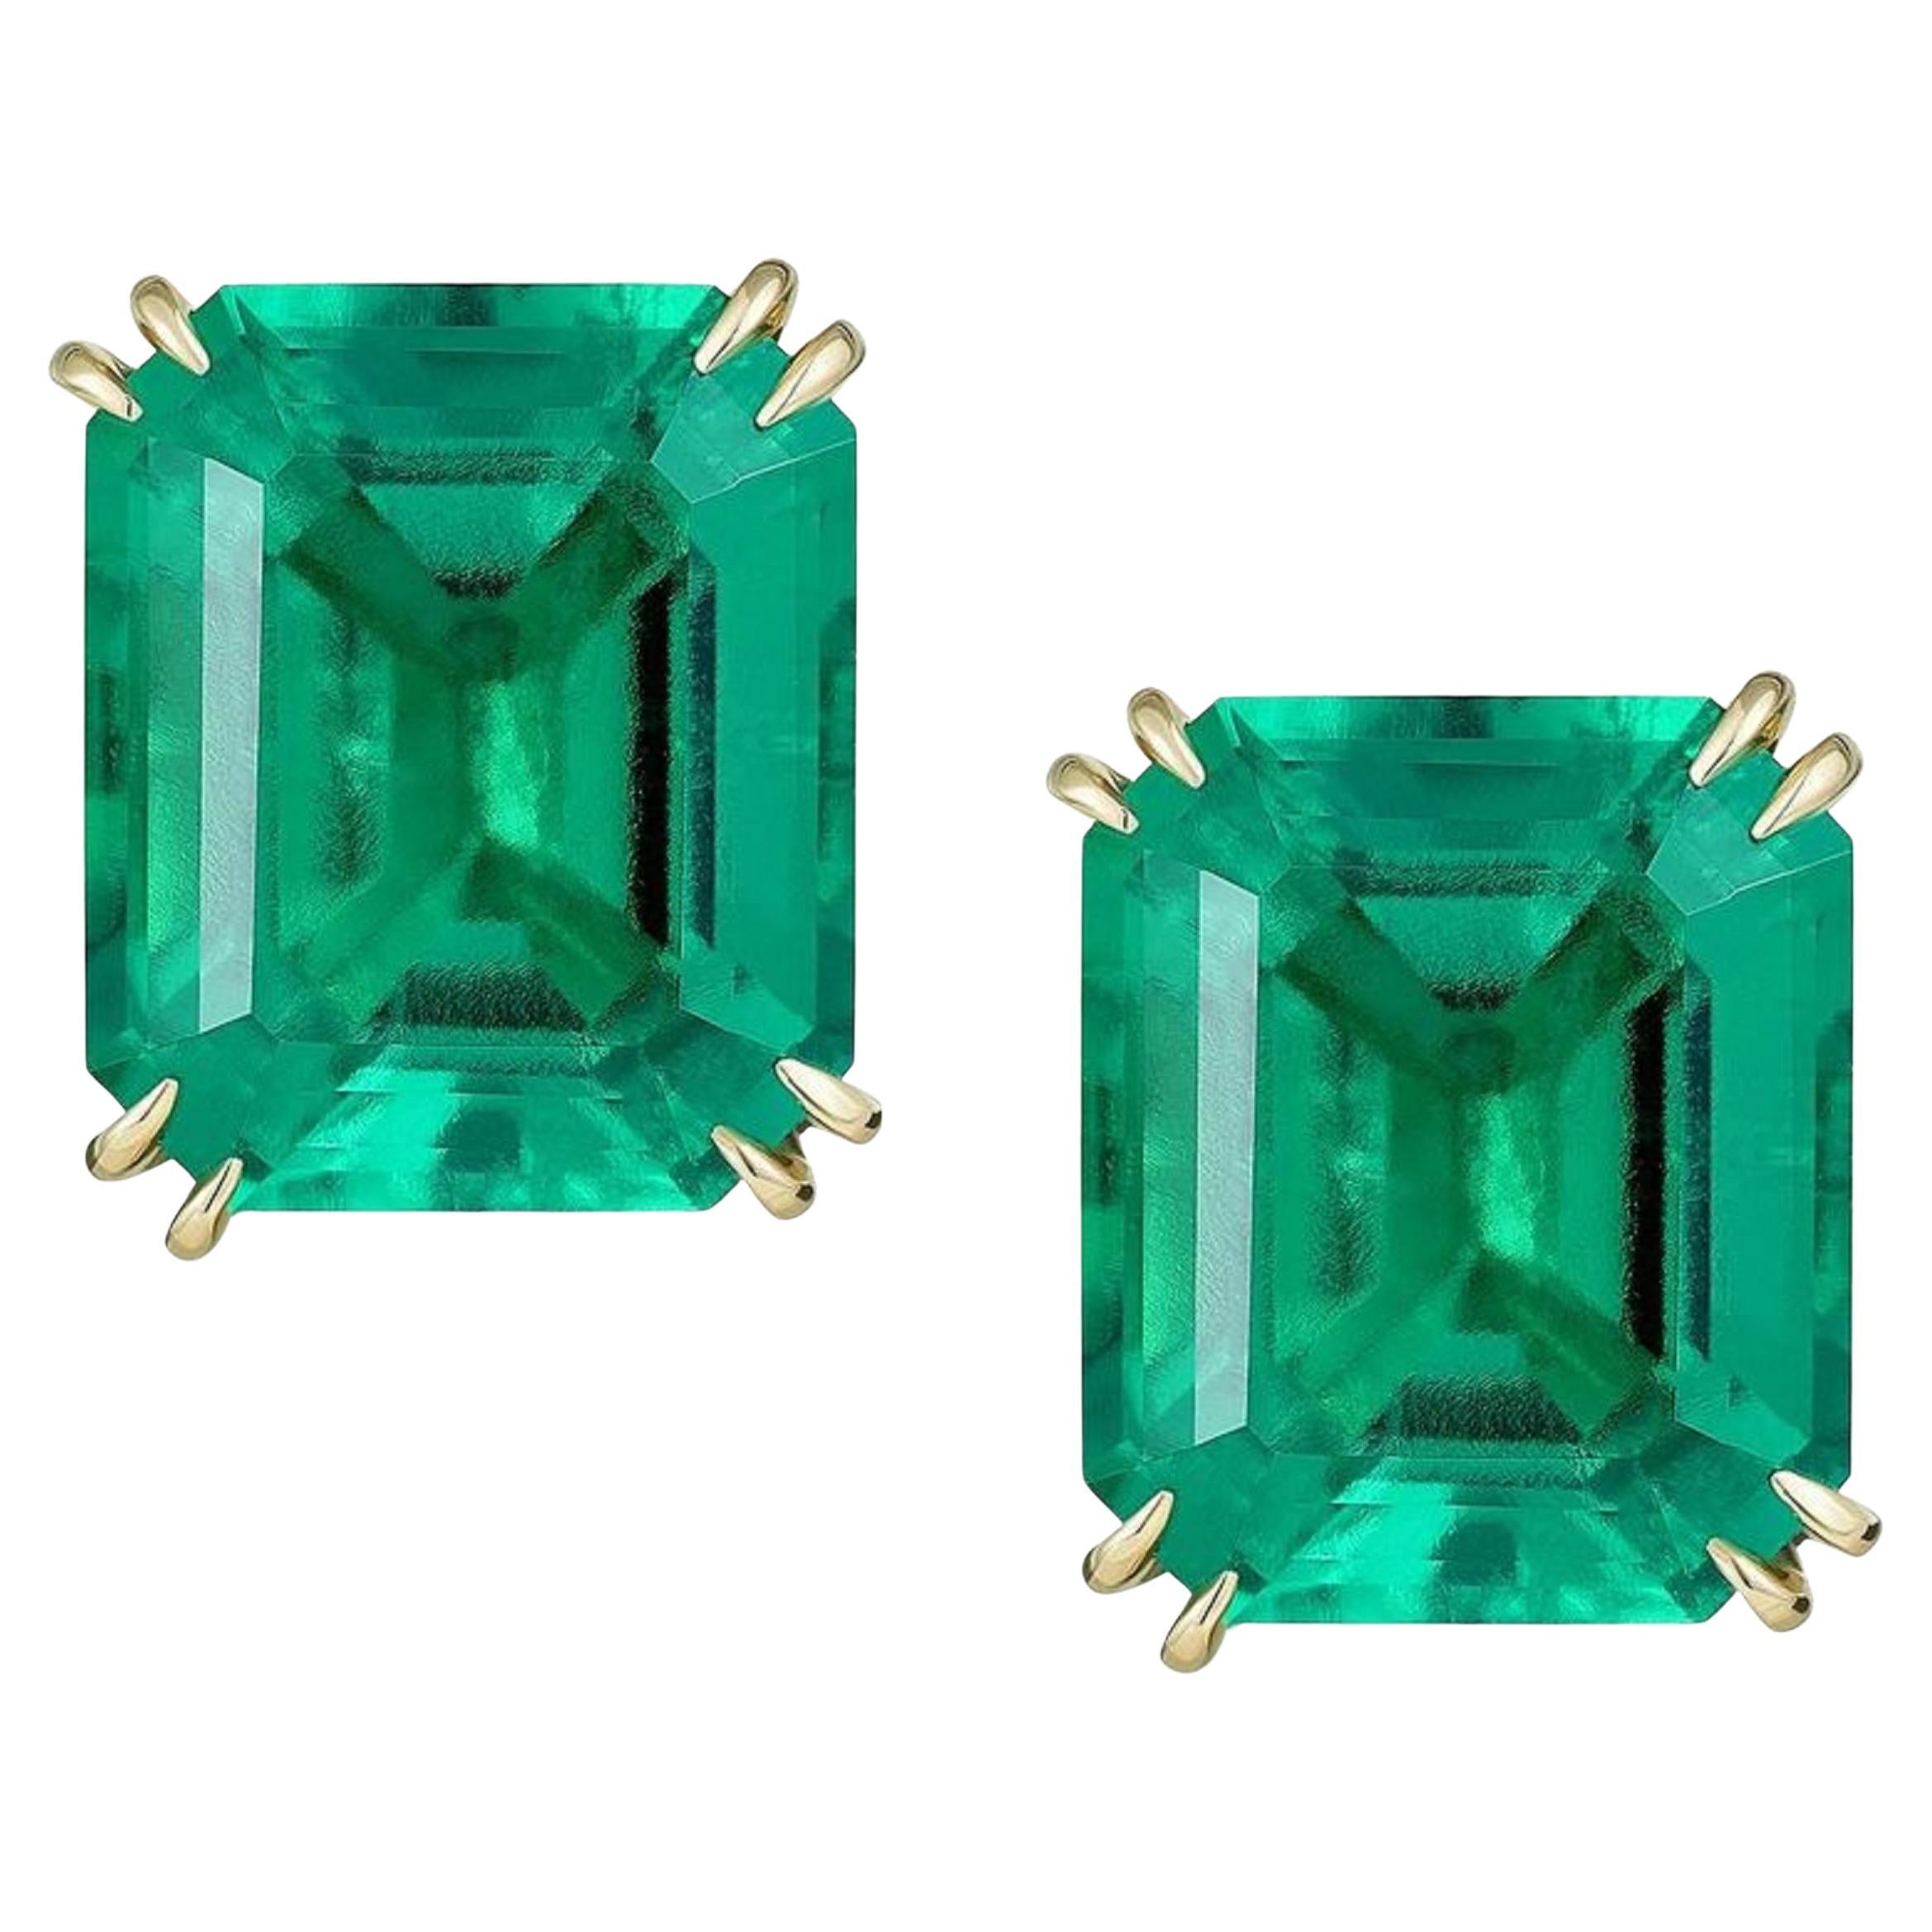 Ein exquisites Paar Smaragde in Investitionsqualität mit insgesamt 4.70 Karat

Dieses Paar Smaragde hat ein perfektes tiefes Grün und einen ausgezeichneten Glanz, und sie haben auch fast keine Unvollkommenheiten, nur sehr wenige Einschlüsse, was bei